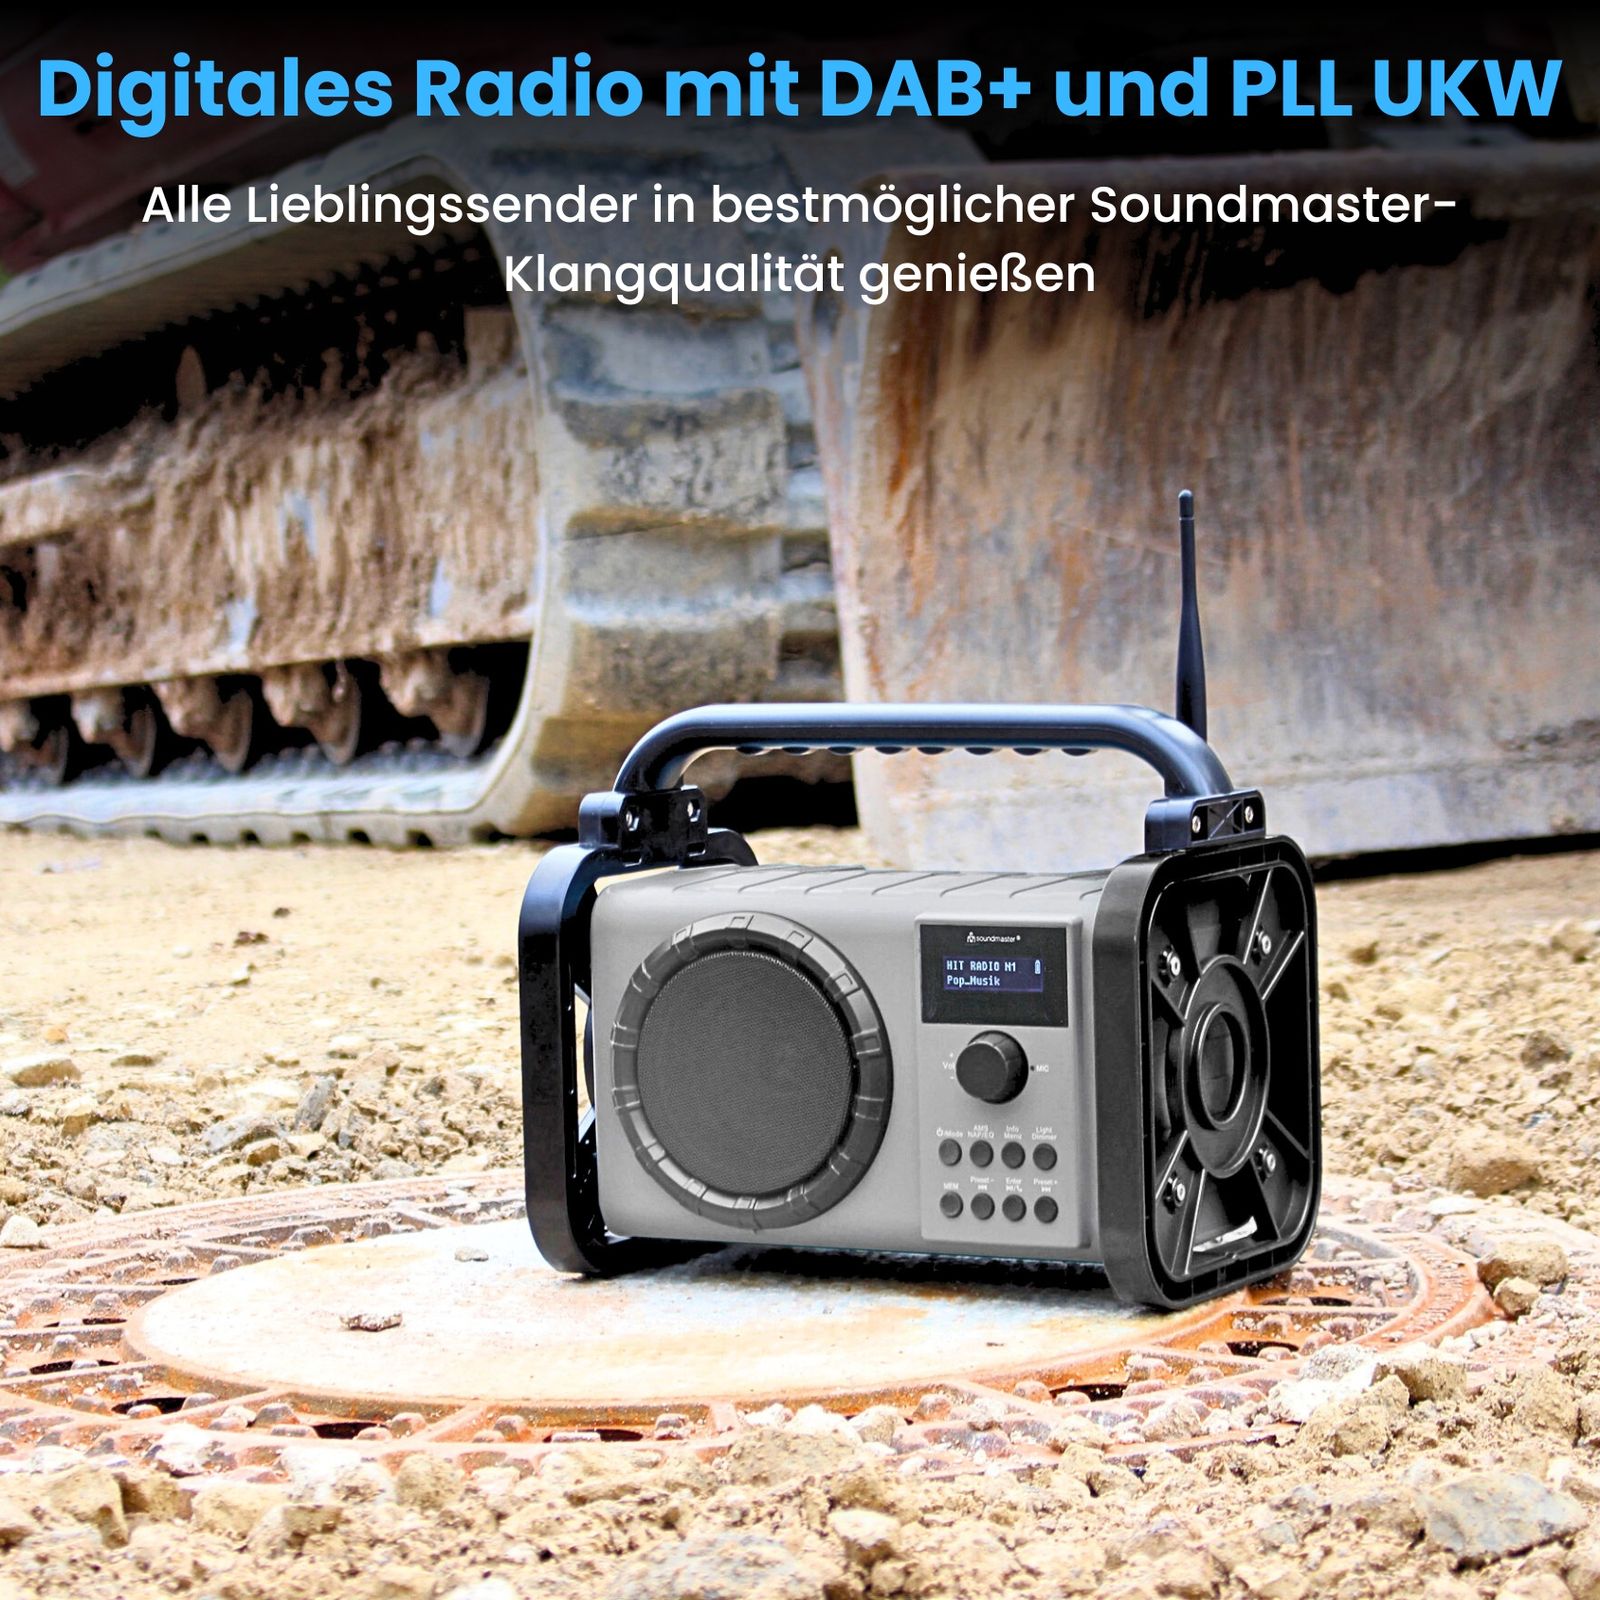 Soundmaster DAB85BL Stereo Baustellenradio Baustellenradio Gartenradio Digitalradio DAB+ UKW-RDS Bluetooth Li-Ion Akku IP44 staub- und spritzwassergeschützt